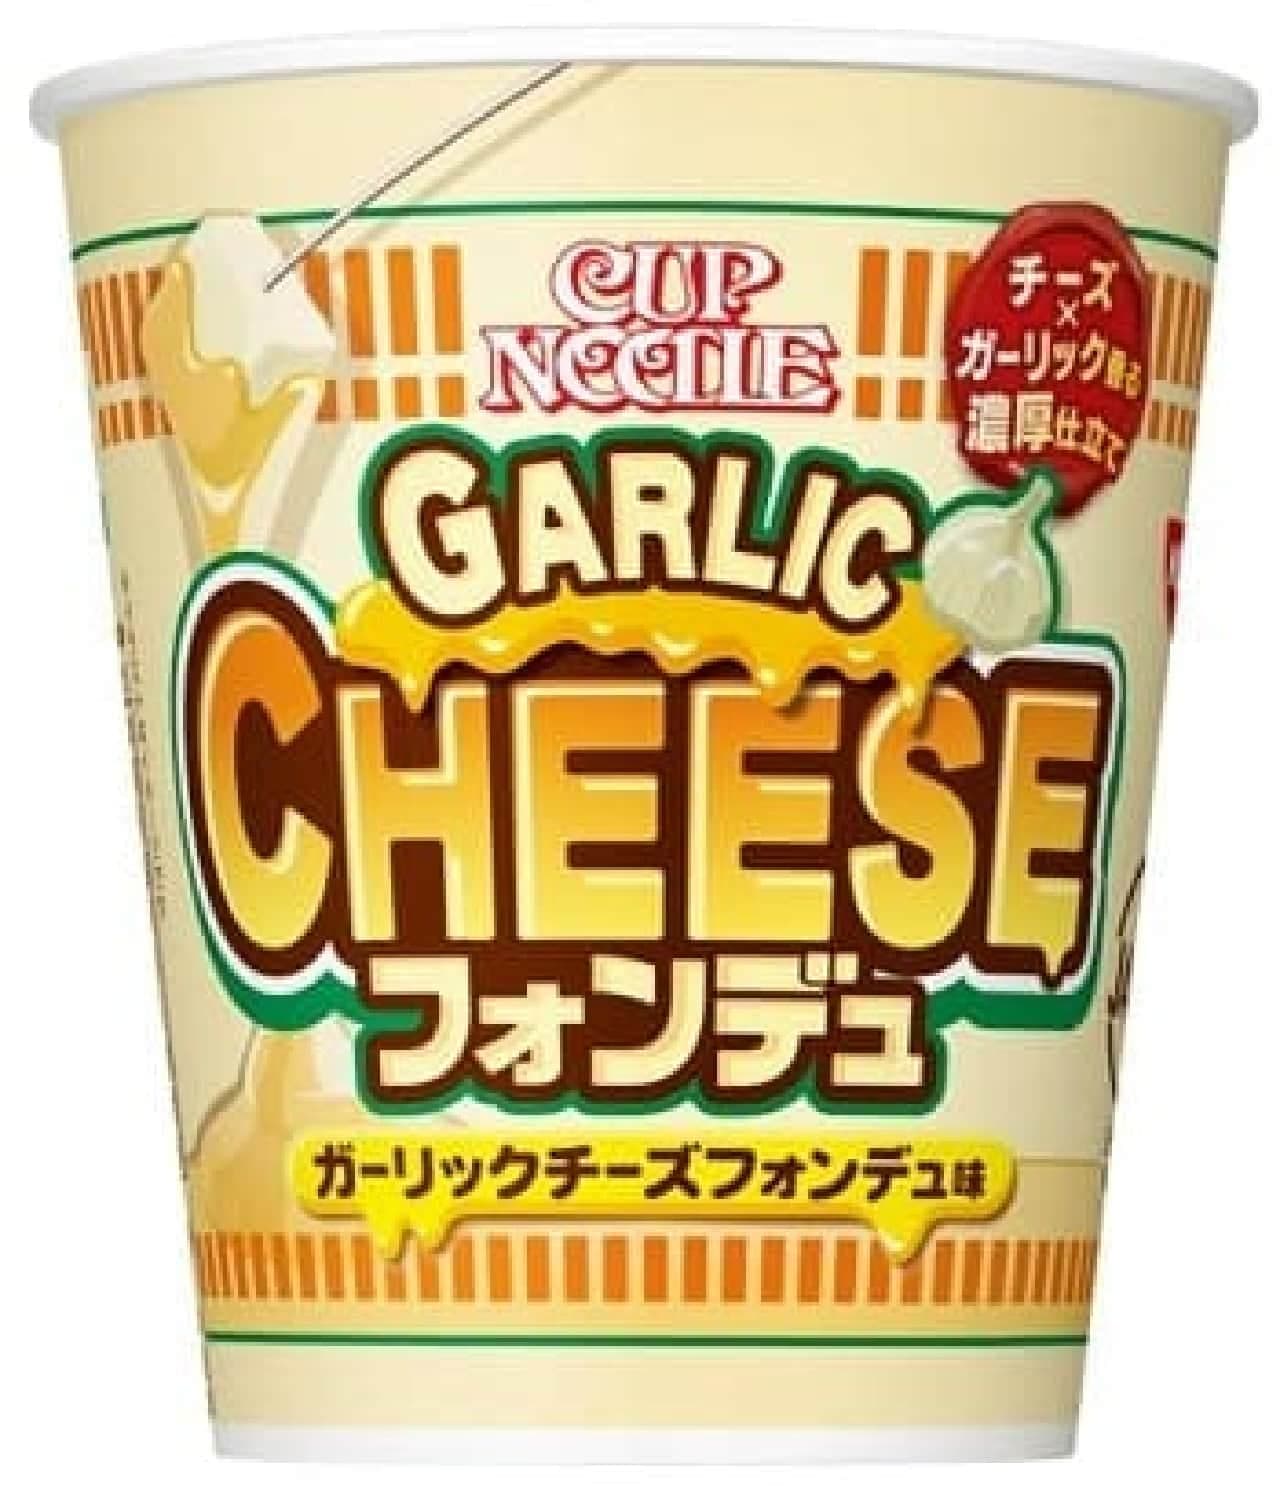 Cup noodle garlic cheese fondue flavor